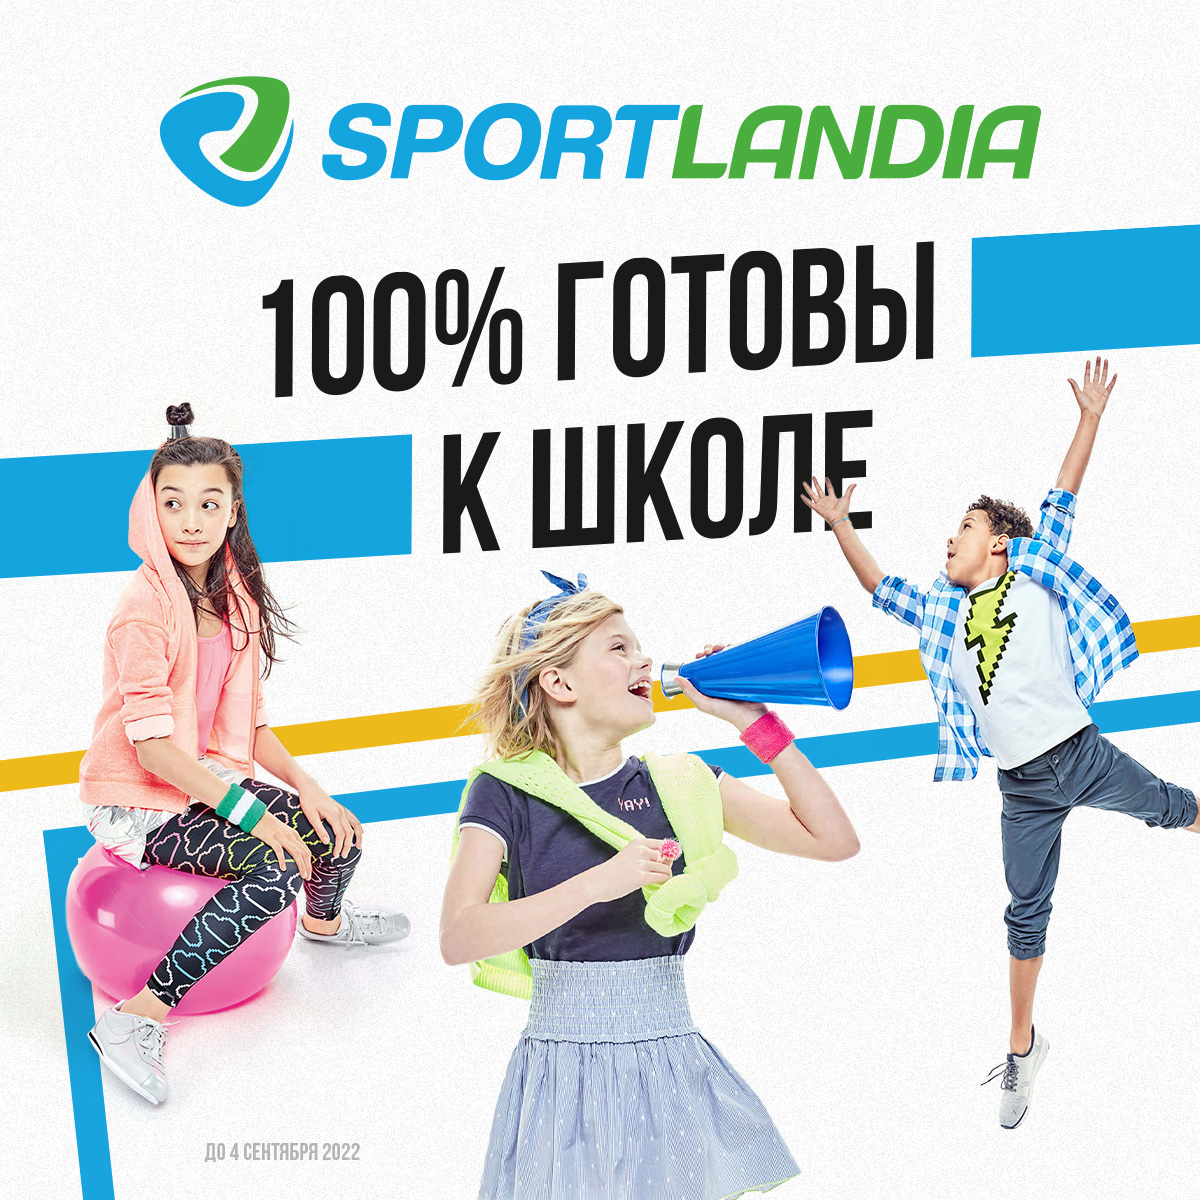 sportlandia moldova